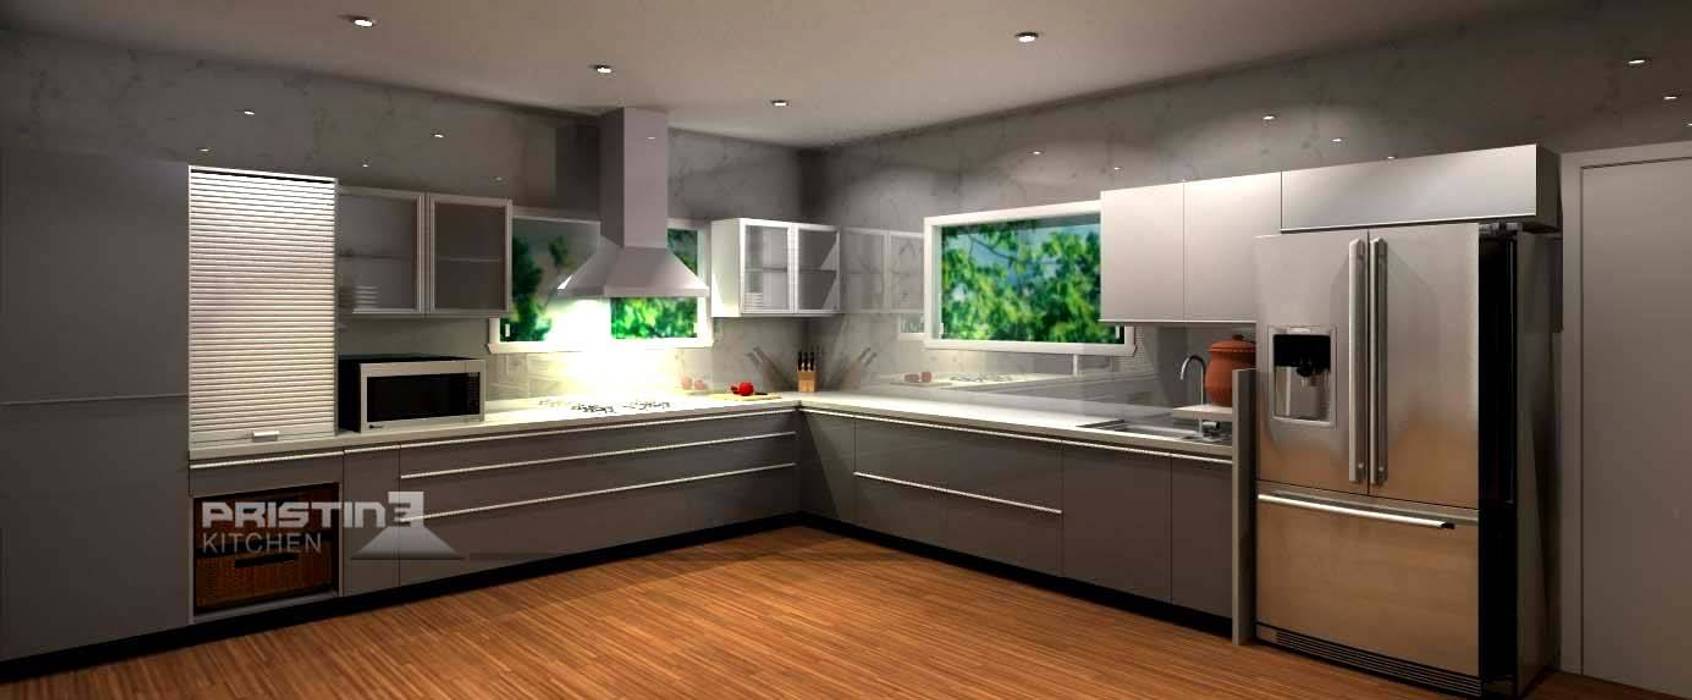 3D kitchen Designs, Pristine Kitchen Pristine Kitchen Modern kitchen